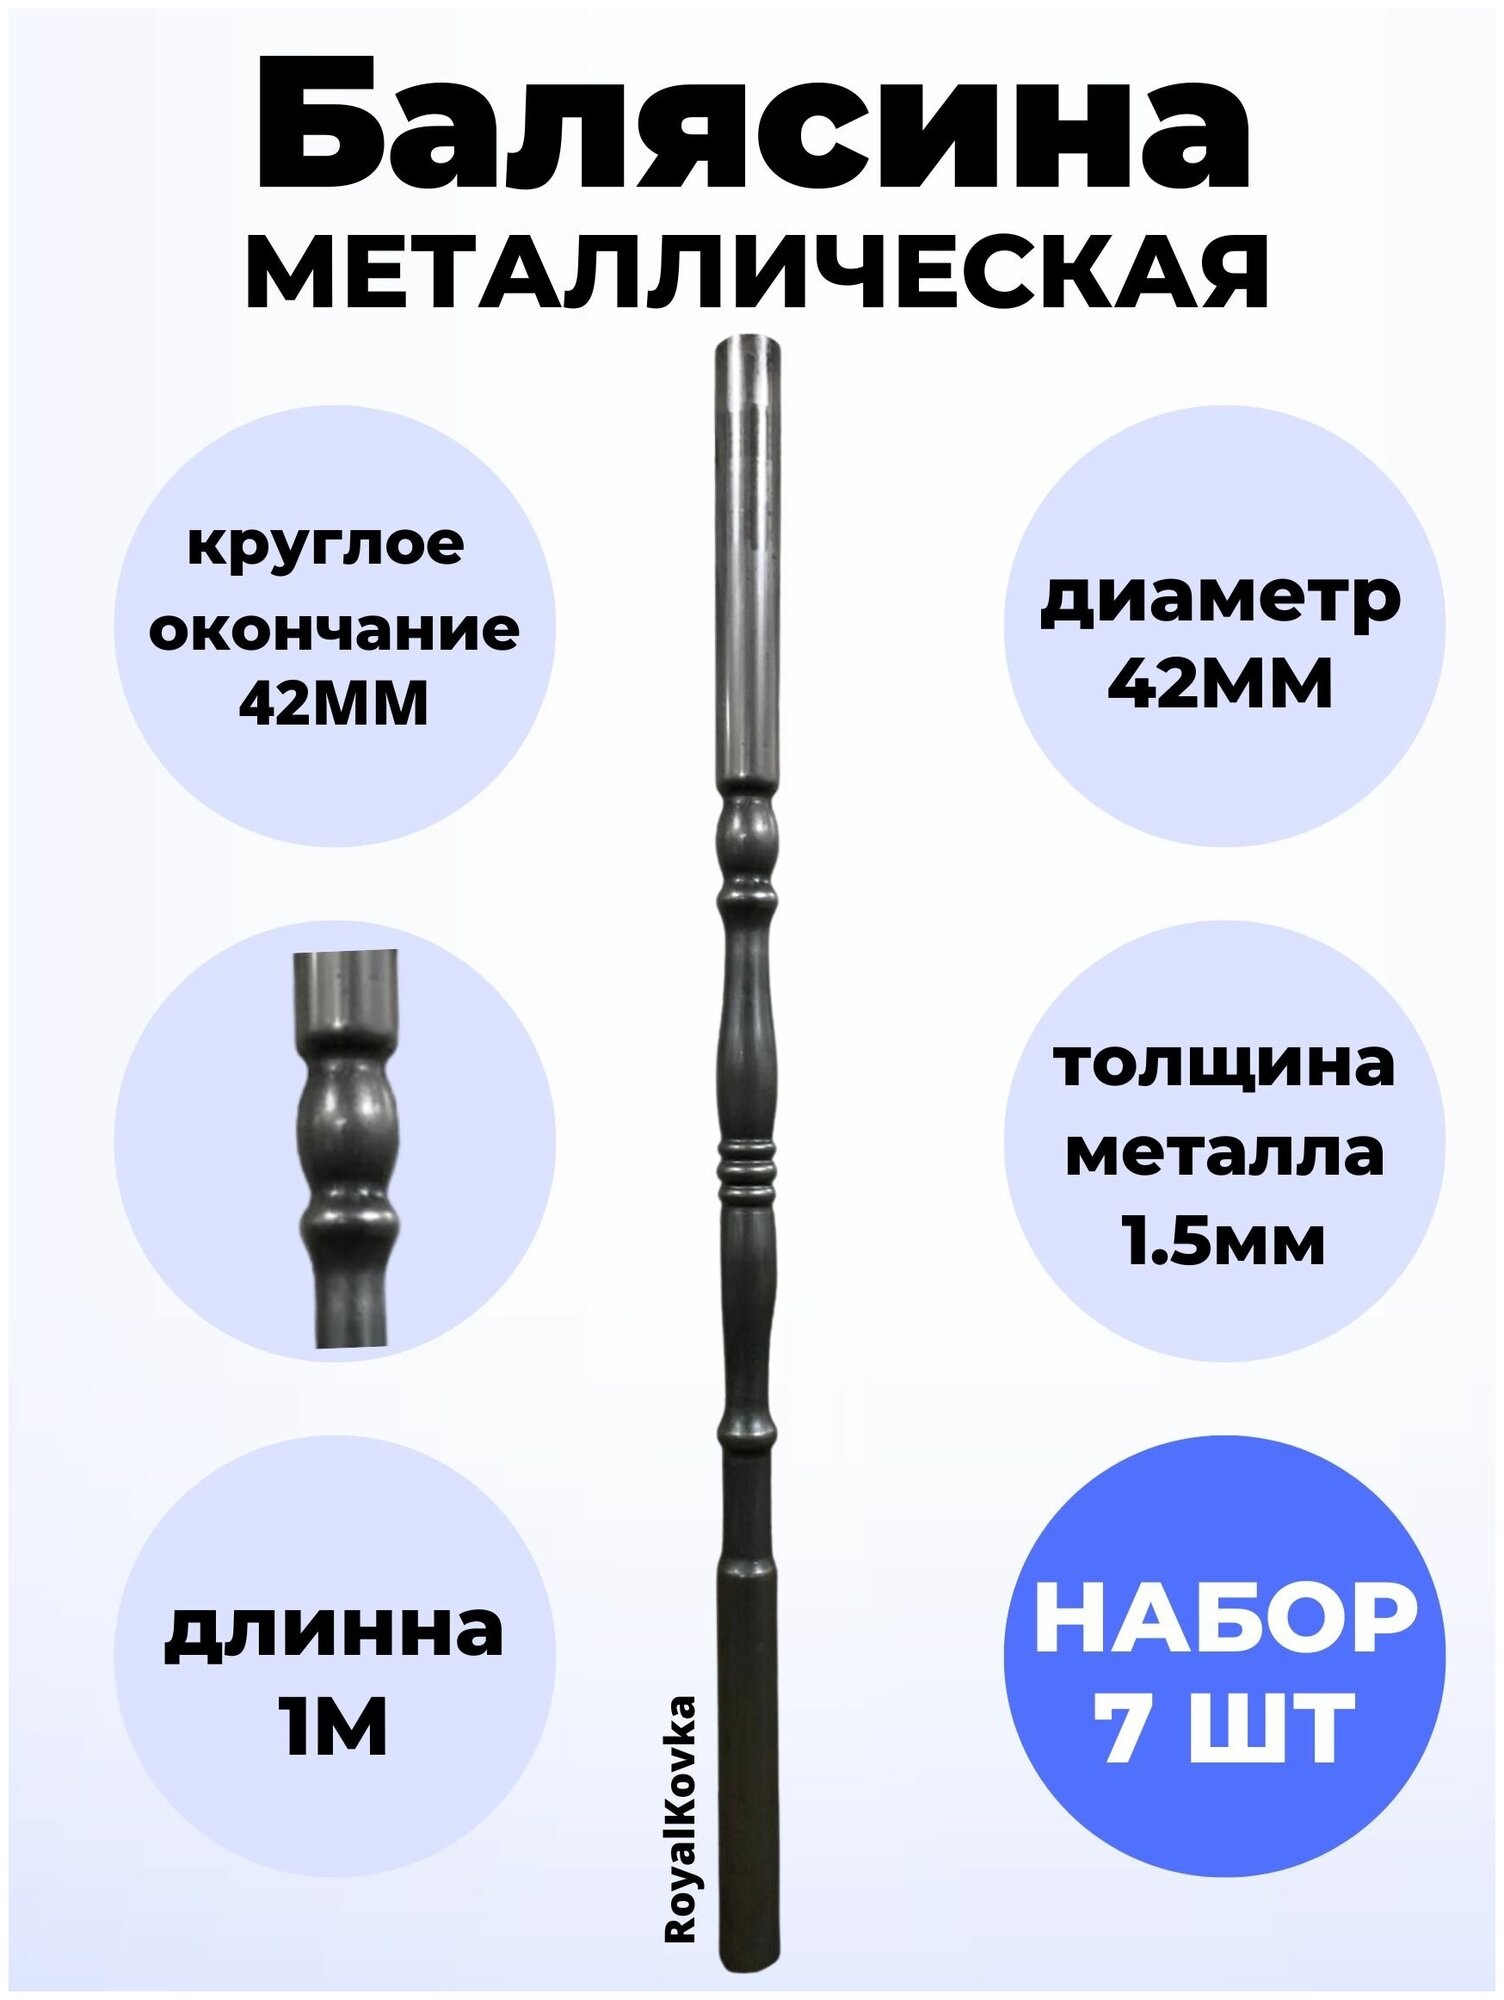 Набор балясин кованных металлических Royal Kovka, 7 шт, диаметр 42 мм, круглые окончания диаметром 42 мм, арт. 42.4 КР 7